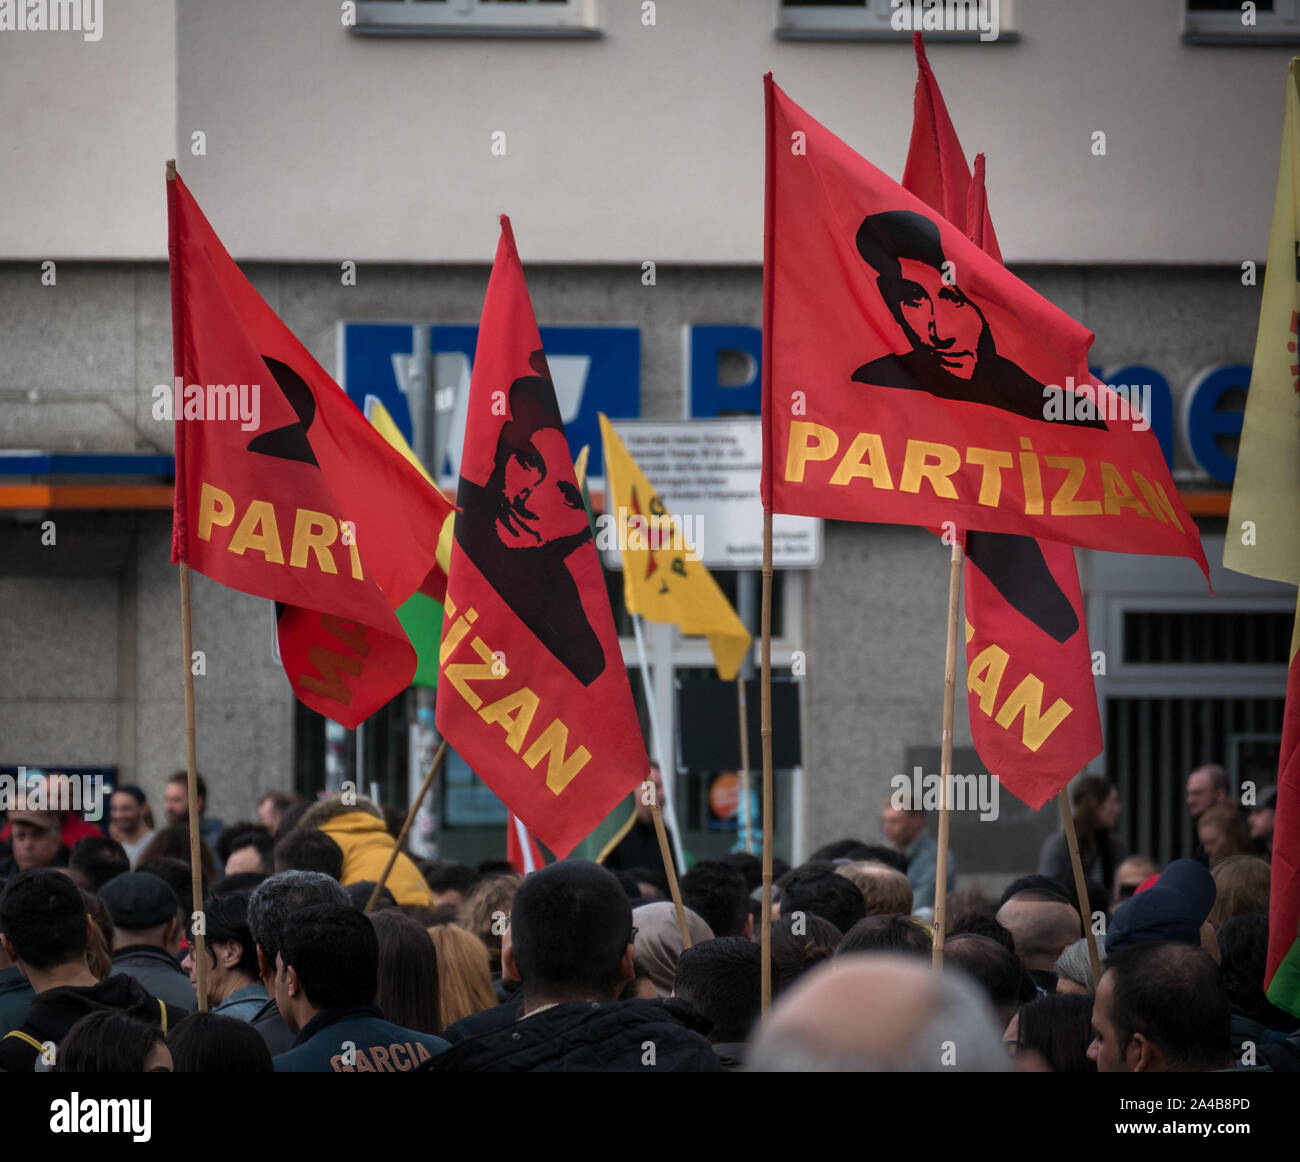 Demostración y protestar contra la ofensiva turca y agresiones contra los kurdos en Siria, el Kurdistán y partidistas de ypg banderas Foto de stock